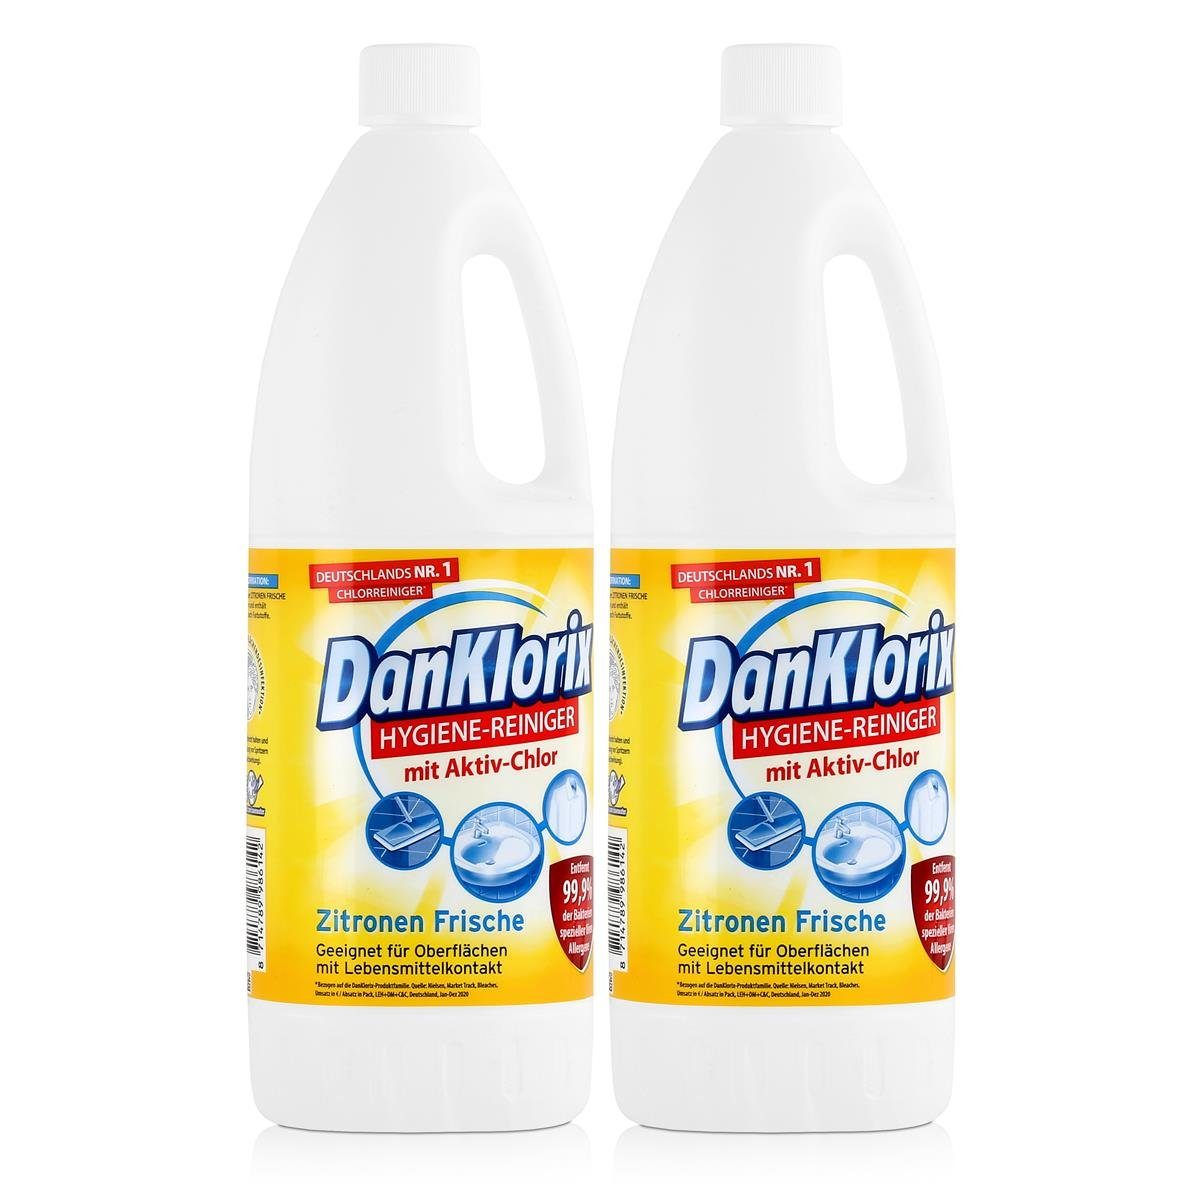 DanKlorix DanKlorix Hygiene-Reiniger Zitronen Frische - WC-Reiniger Mit Aktiv-Chlor 1,5L (2e